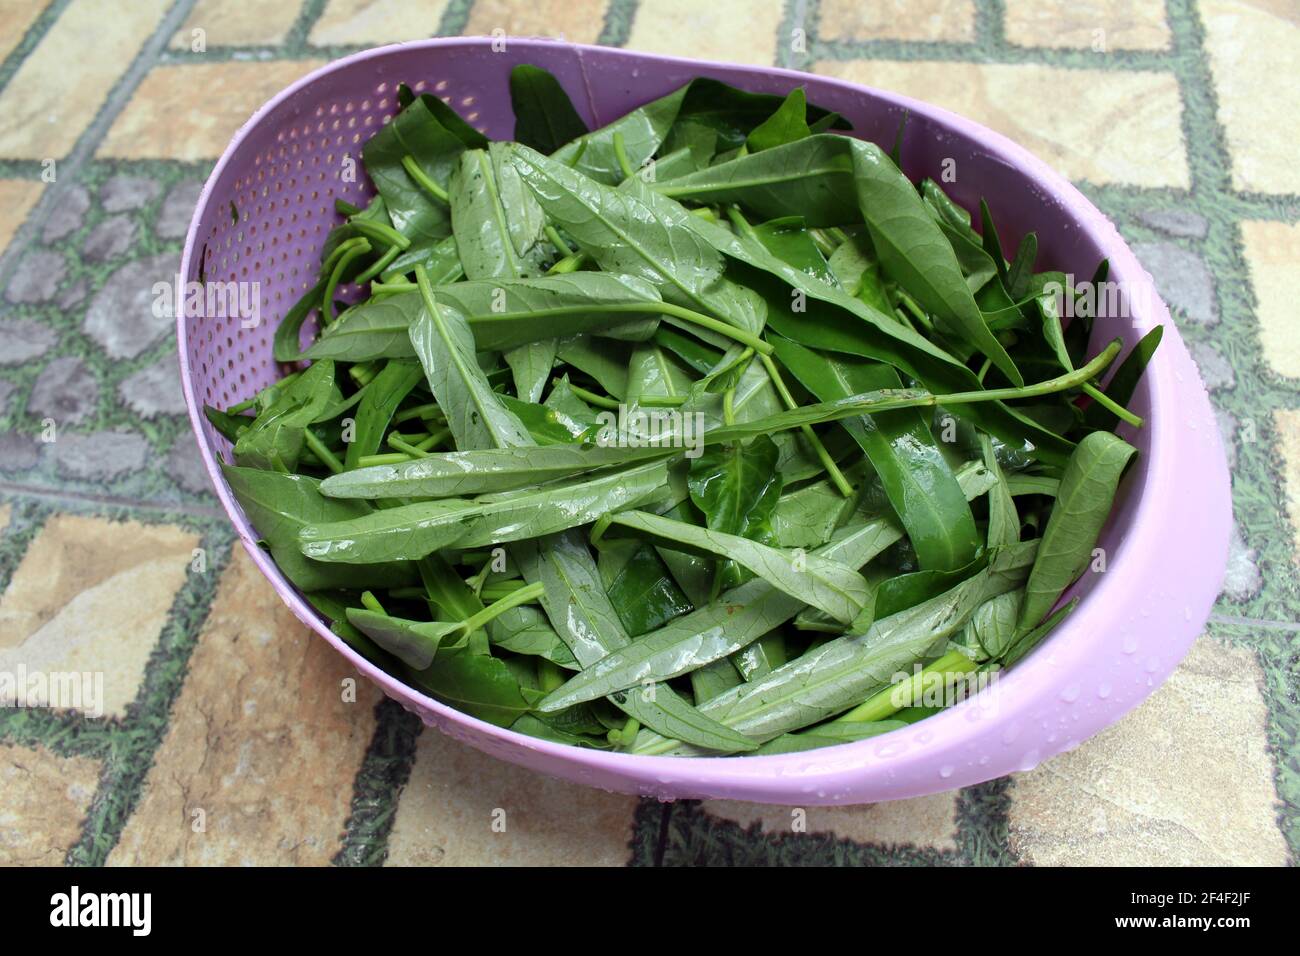 Closeup of fresh kangkung, kangkong, or water spinach. Stock Photo